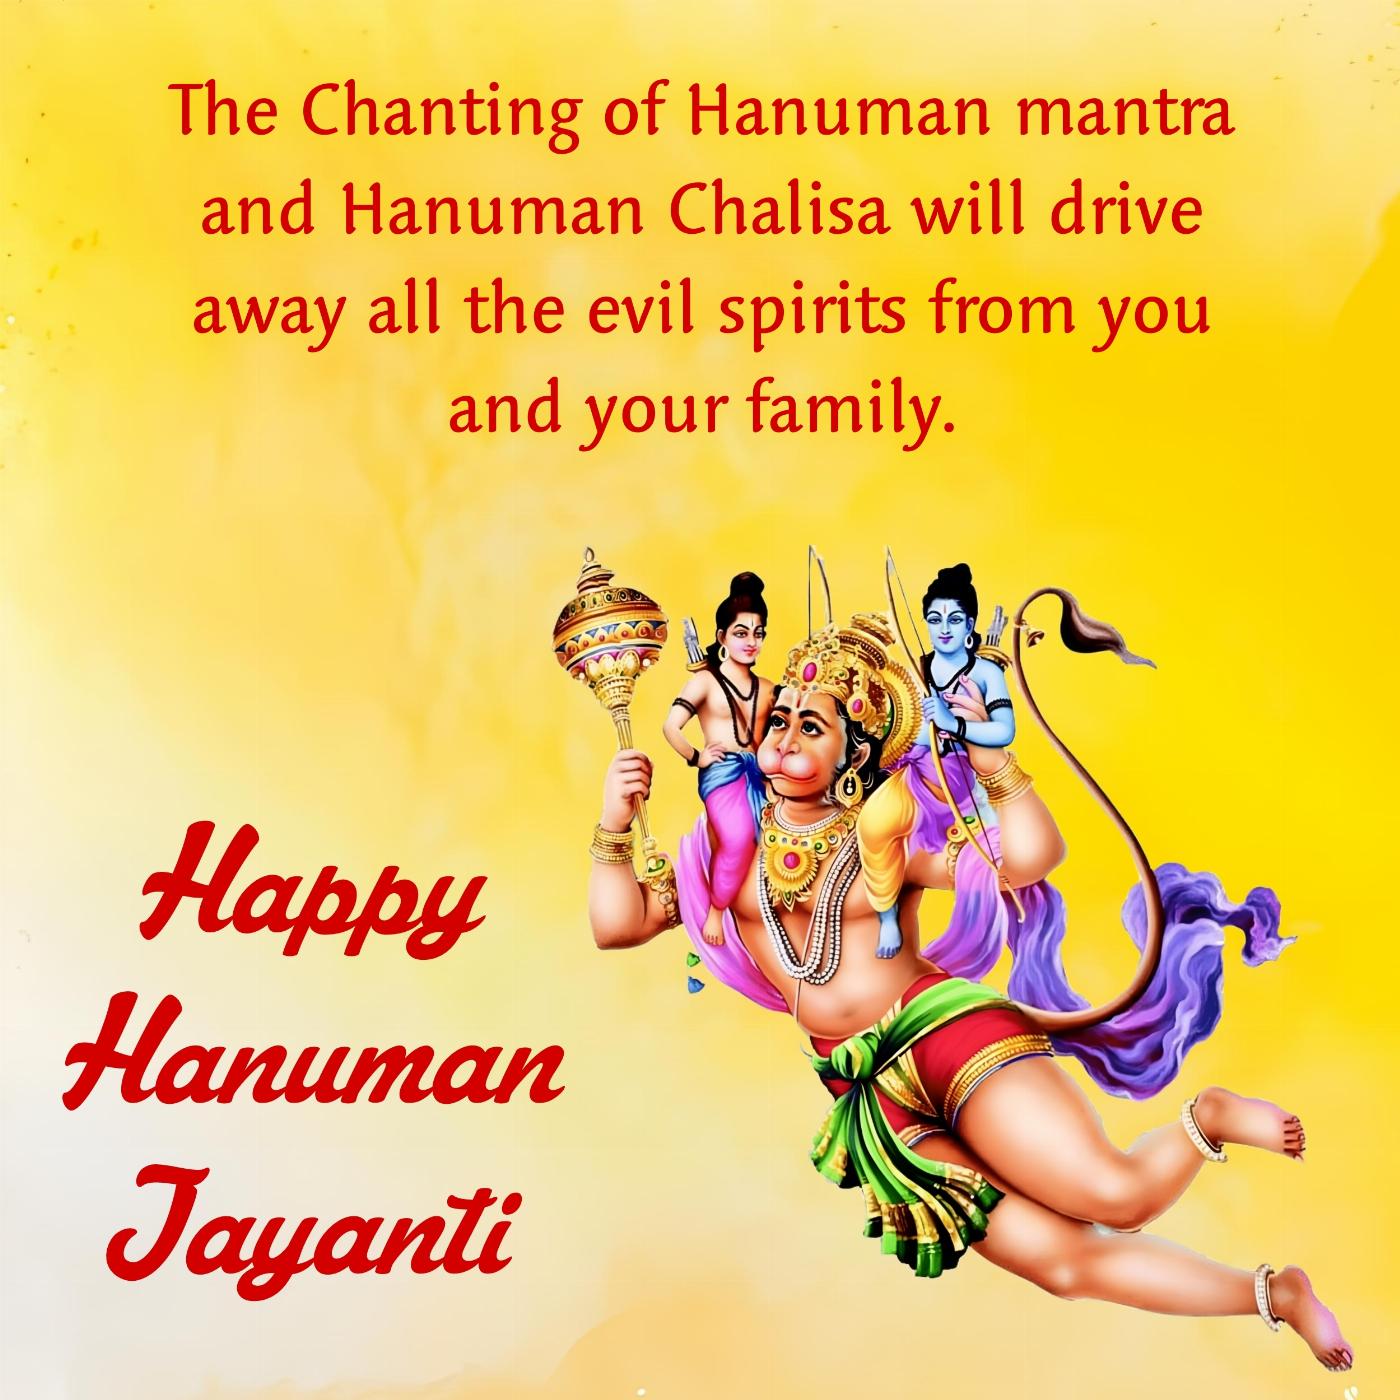 The Chanting of Hanuman mantra and Hanuman Chalisa